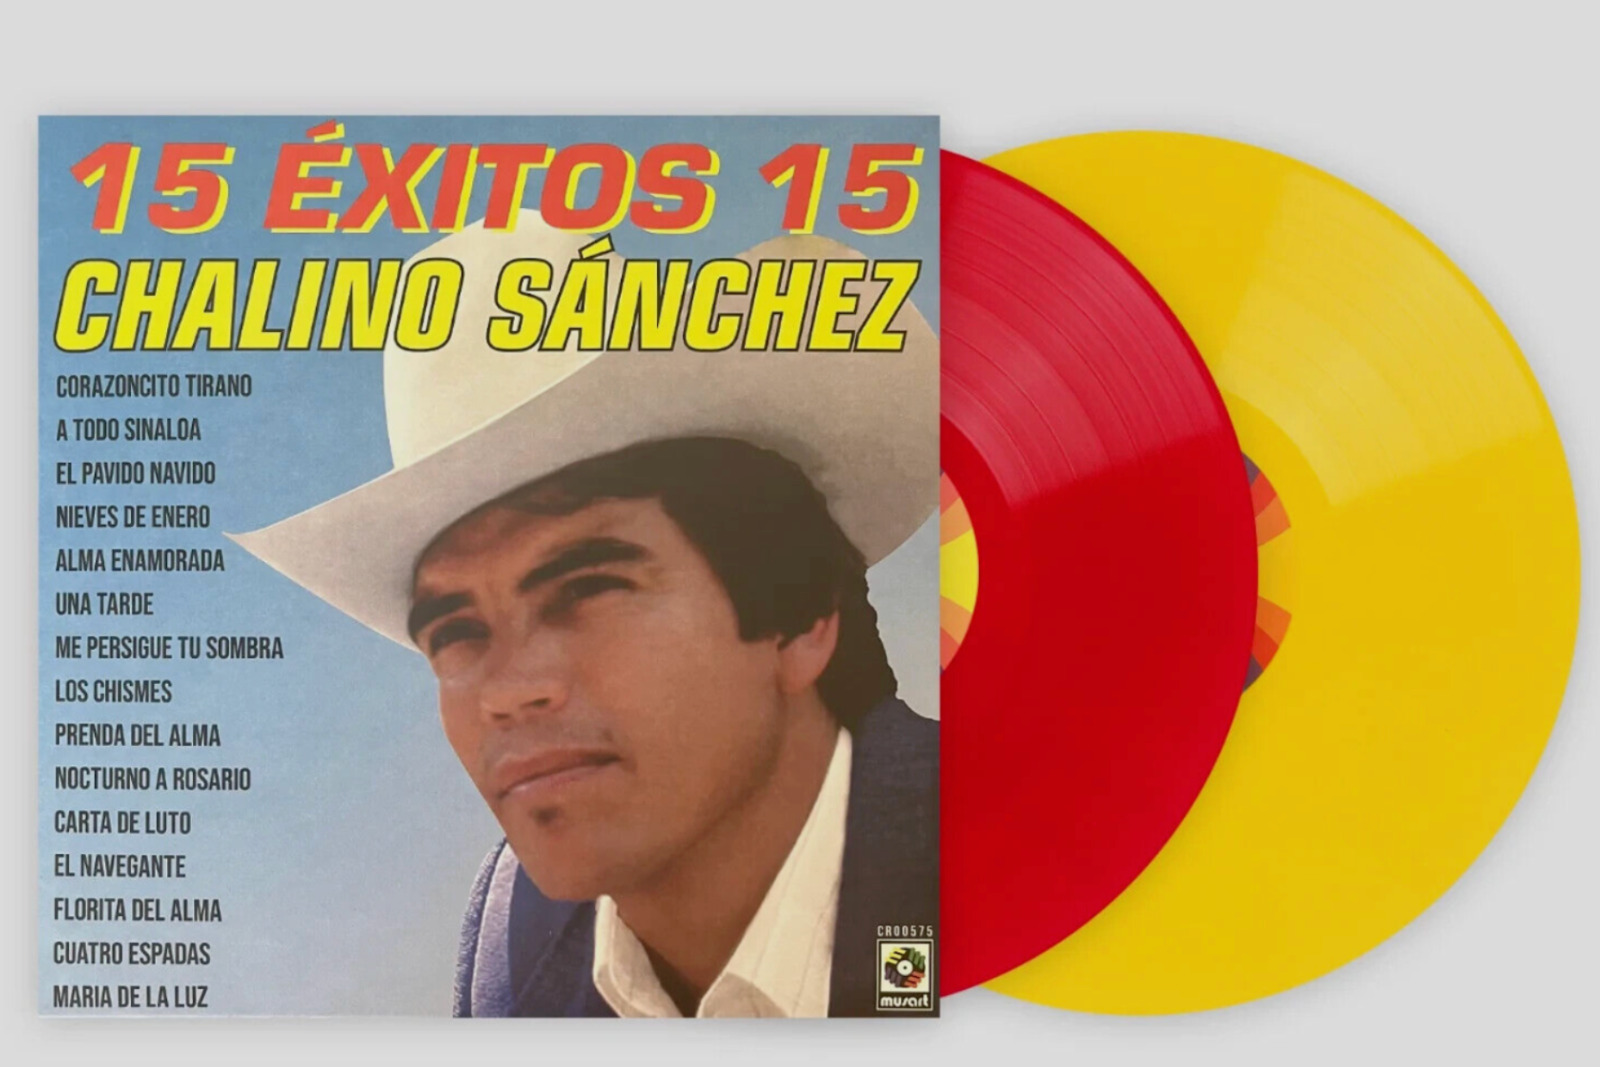 CHALINO SANCHEZ 15 EXITOS 15 VINYL  EXCL RED YELLOW LP NIEVES DE ENERO NEW